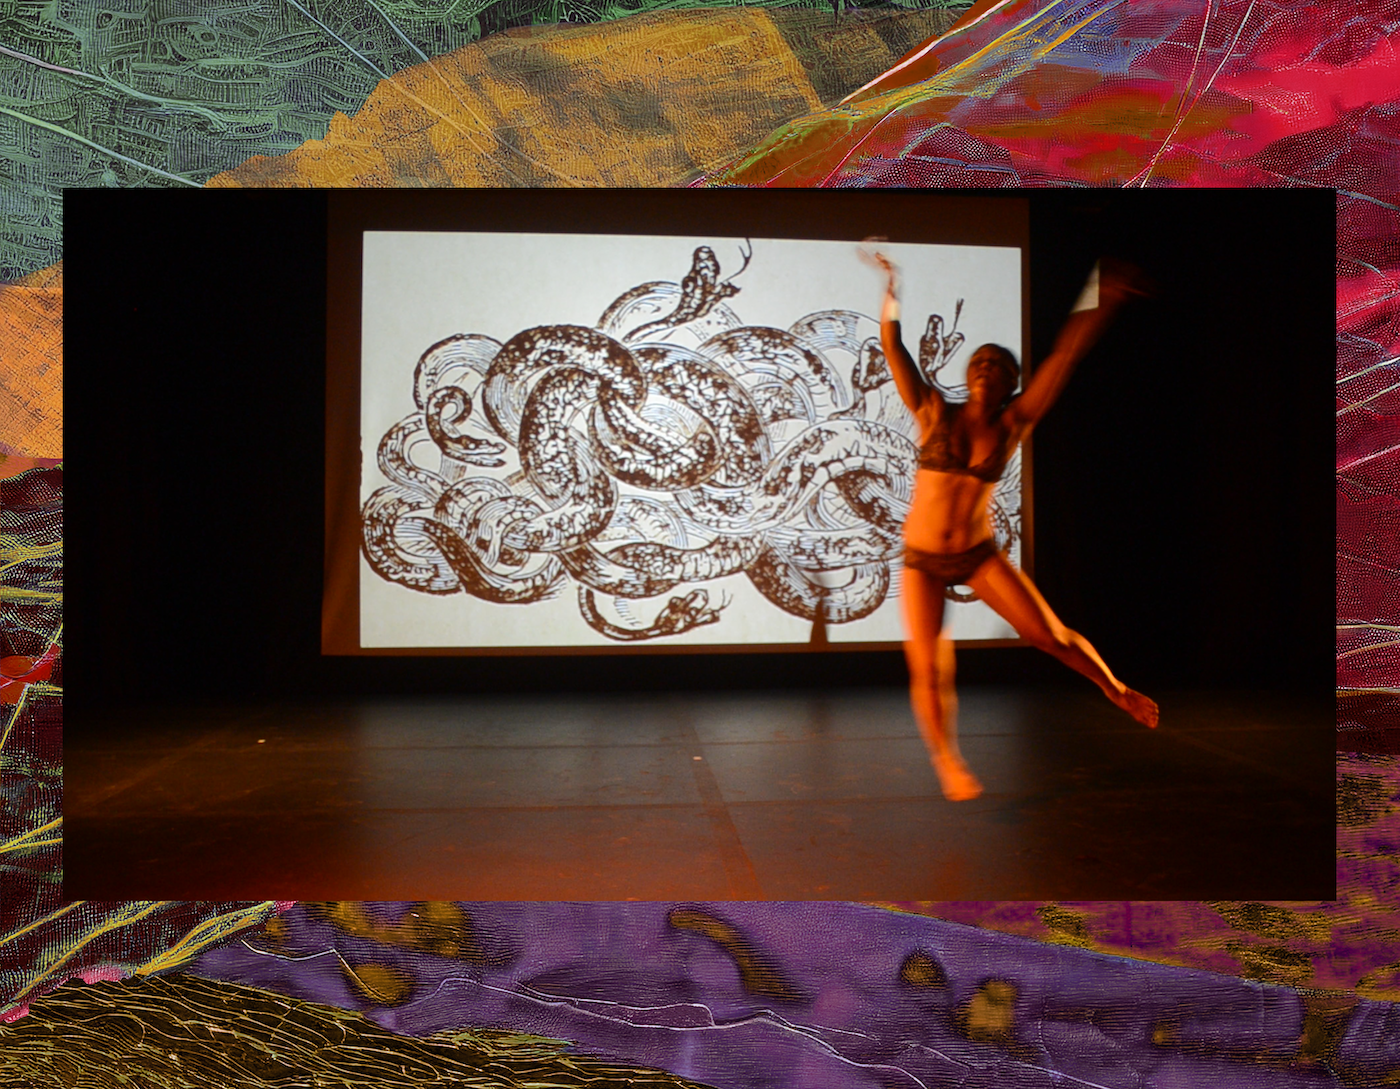 Alttext auf Deutsch: Eine Tänzerin vor einer Projektion von Schlangenzeichnungen. Alt text in English: A dancer in front of a projection of snake drawings.